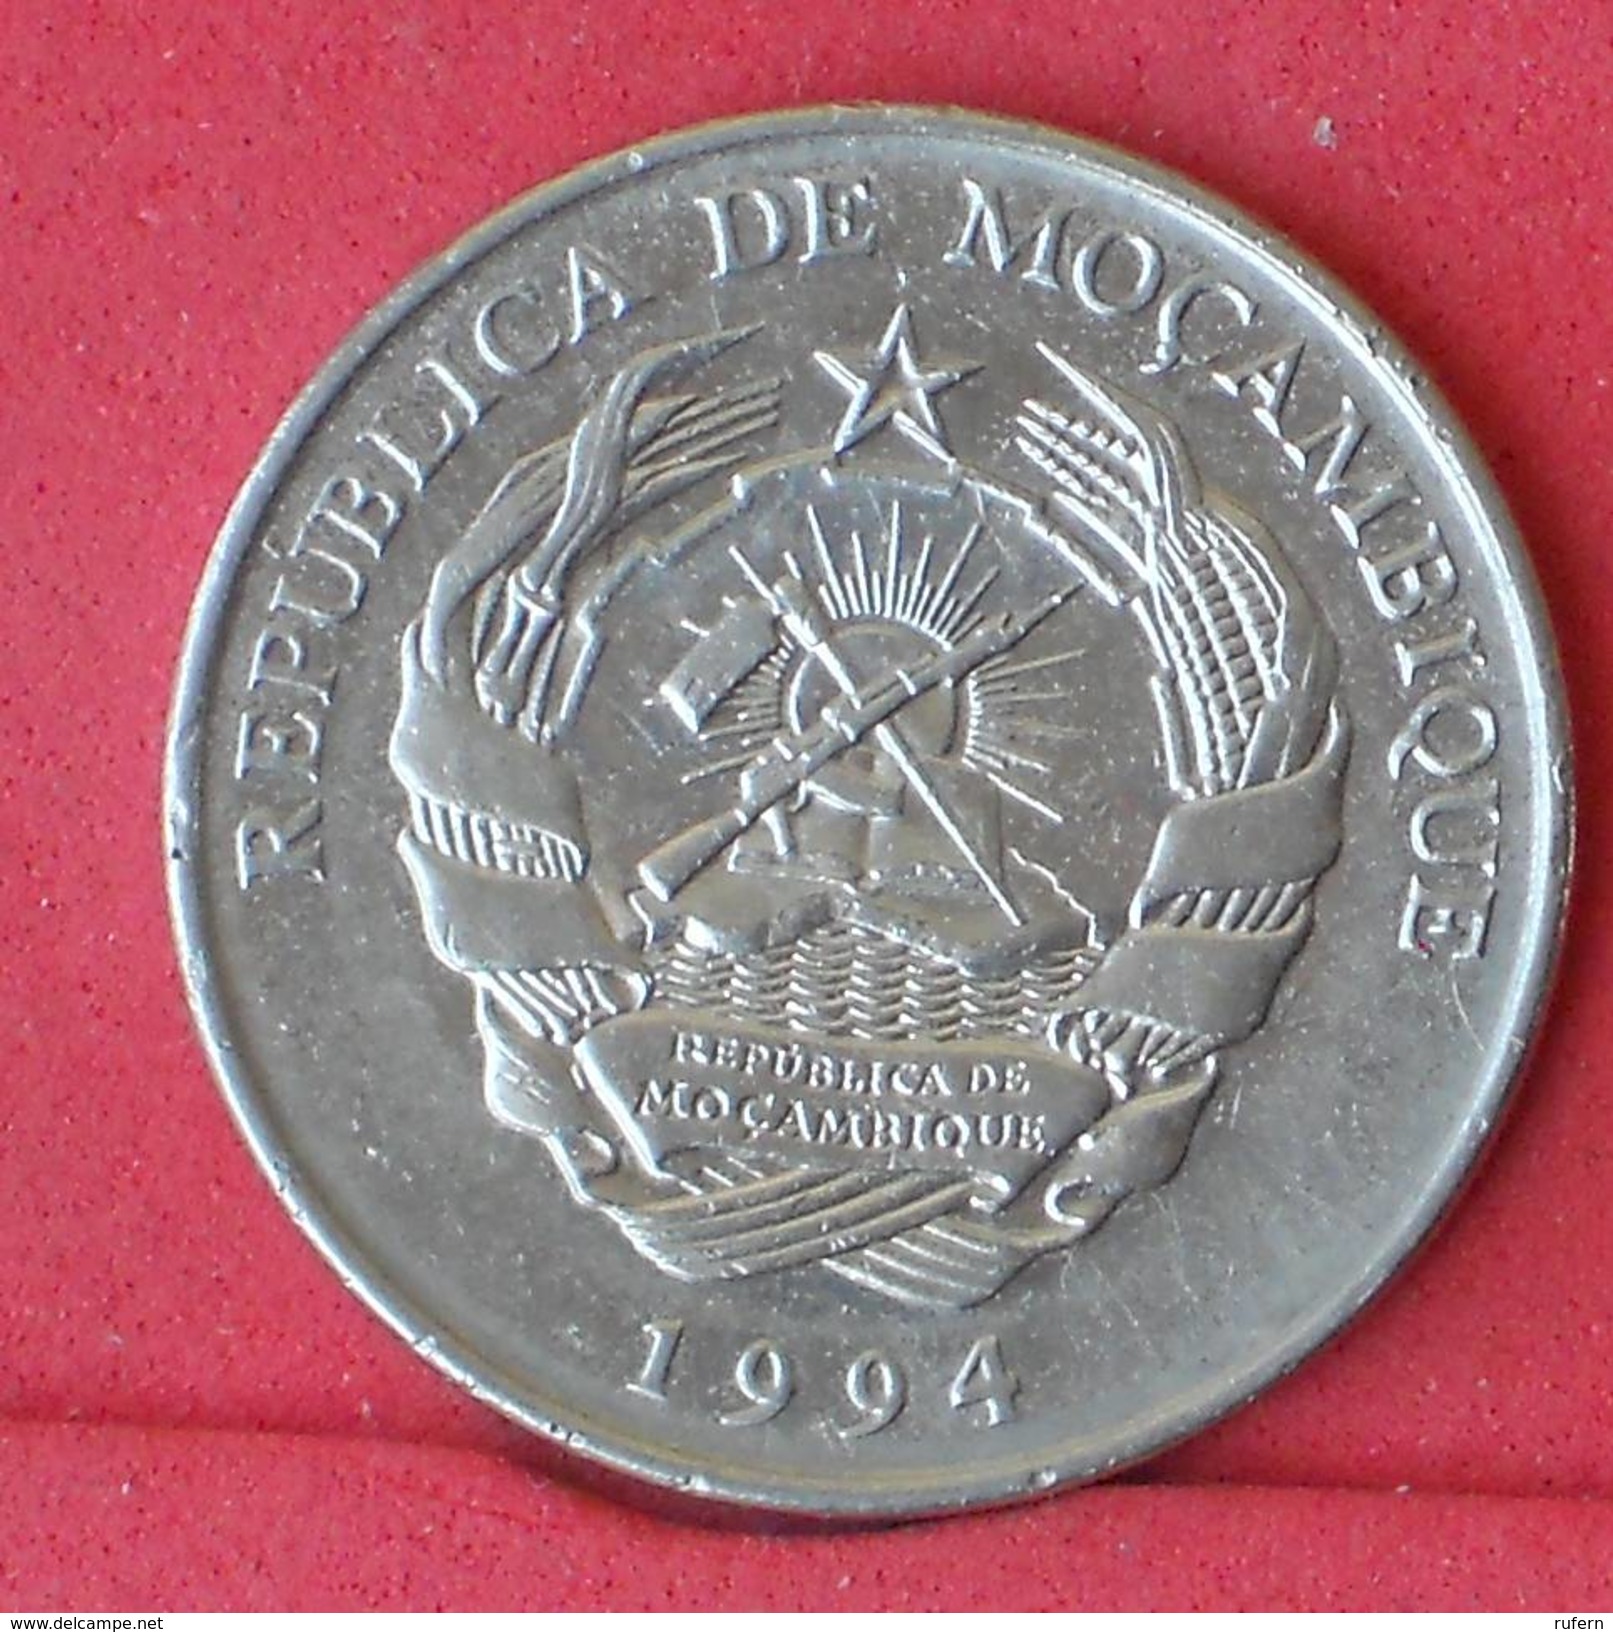 MOZAMBIQUE 1000 METICAIS 1994 -    KM# 122 - (Nº18244) - Mozambique